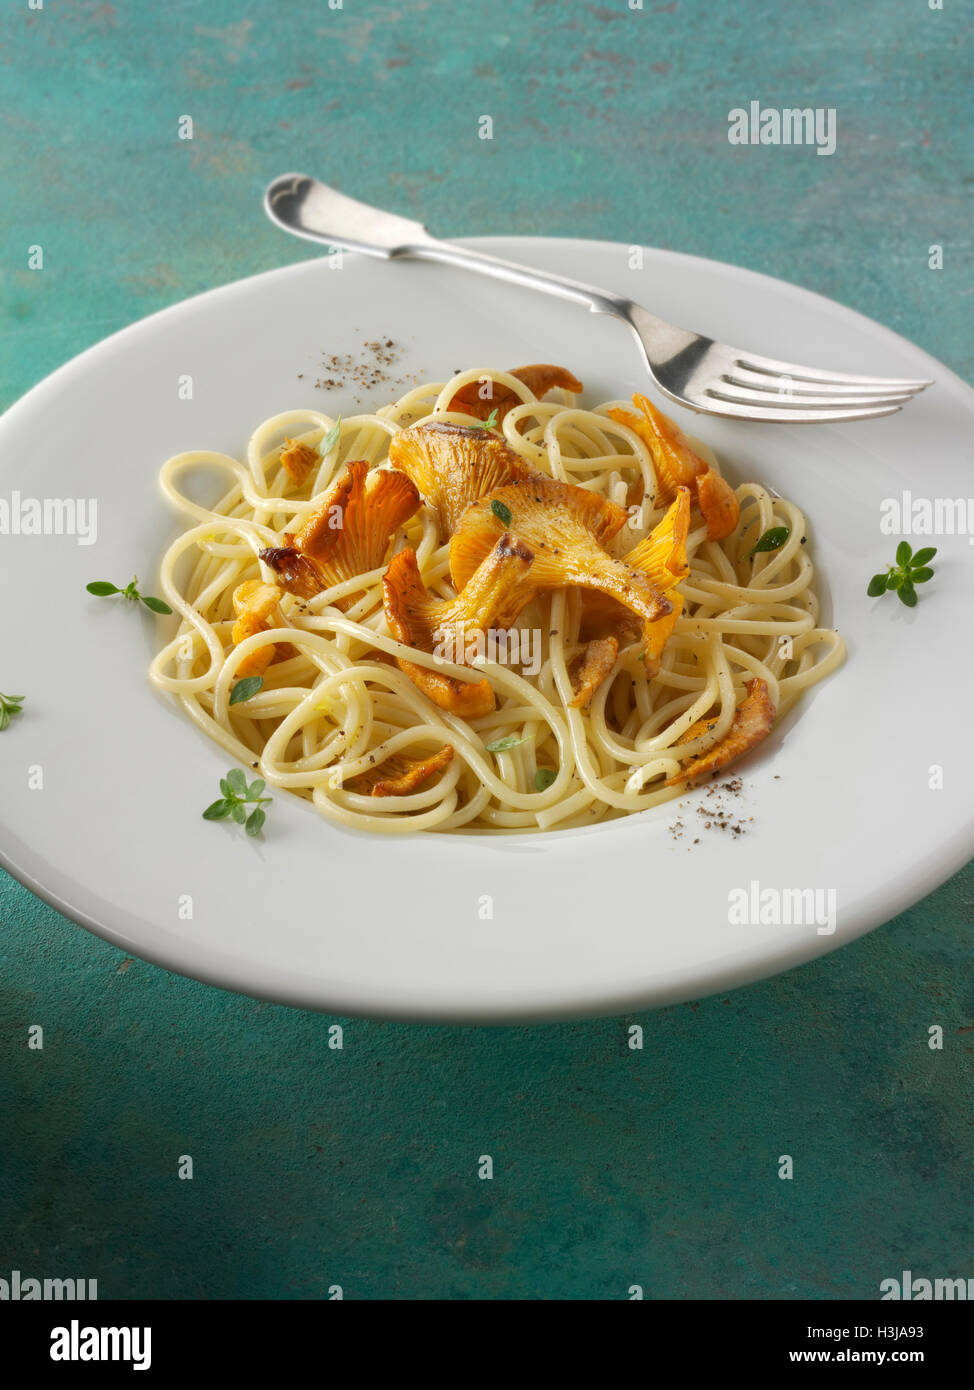 Wiild chanterelle ou girolle organiques Champignons (Cantharellus cibarius) ou sautés au beurre et avec des spaghetti hebs Banque D'Images